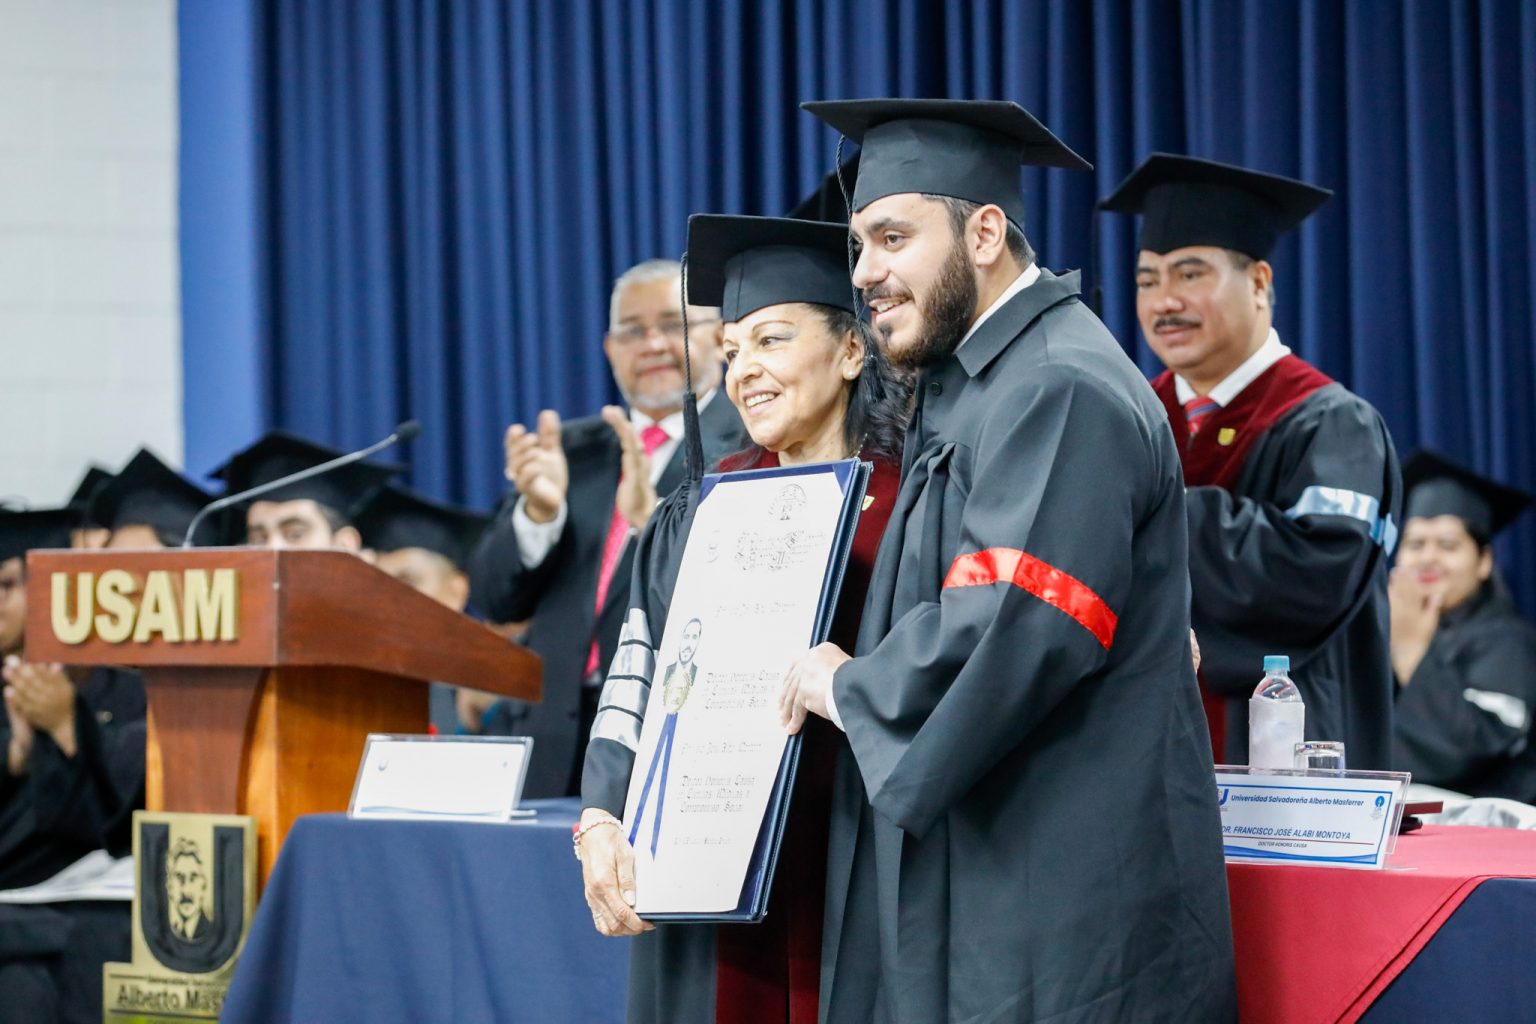 Ministro de Salud de El Salvador recibe Doctorado Honoris Causa por su destacada trayectoria en ciencias médicas y compromiso social